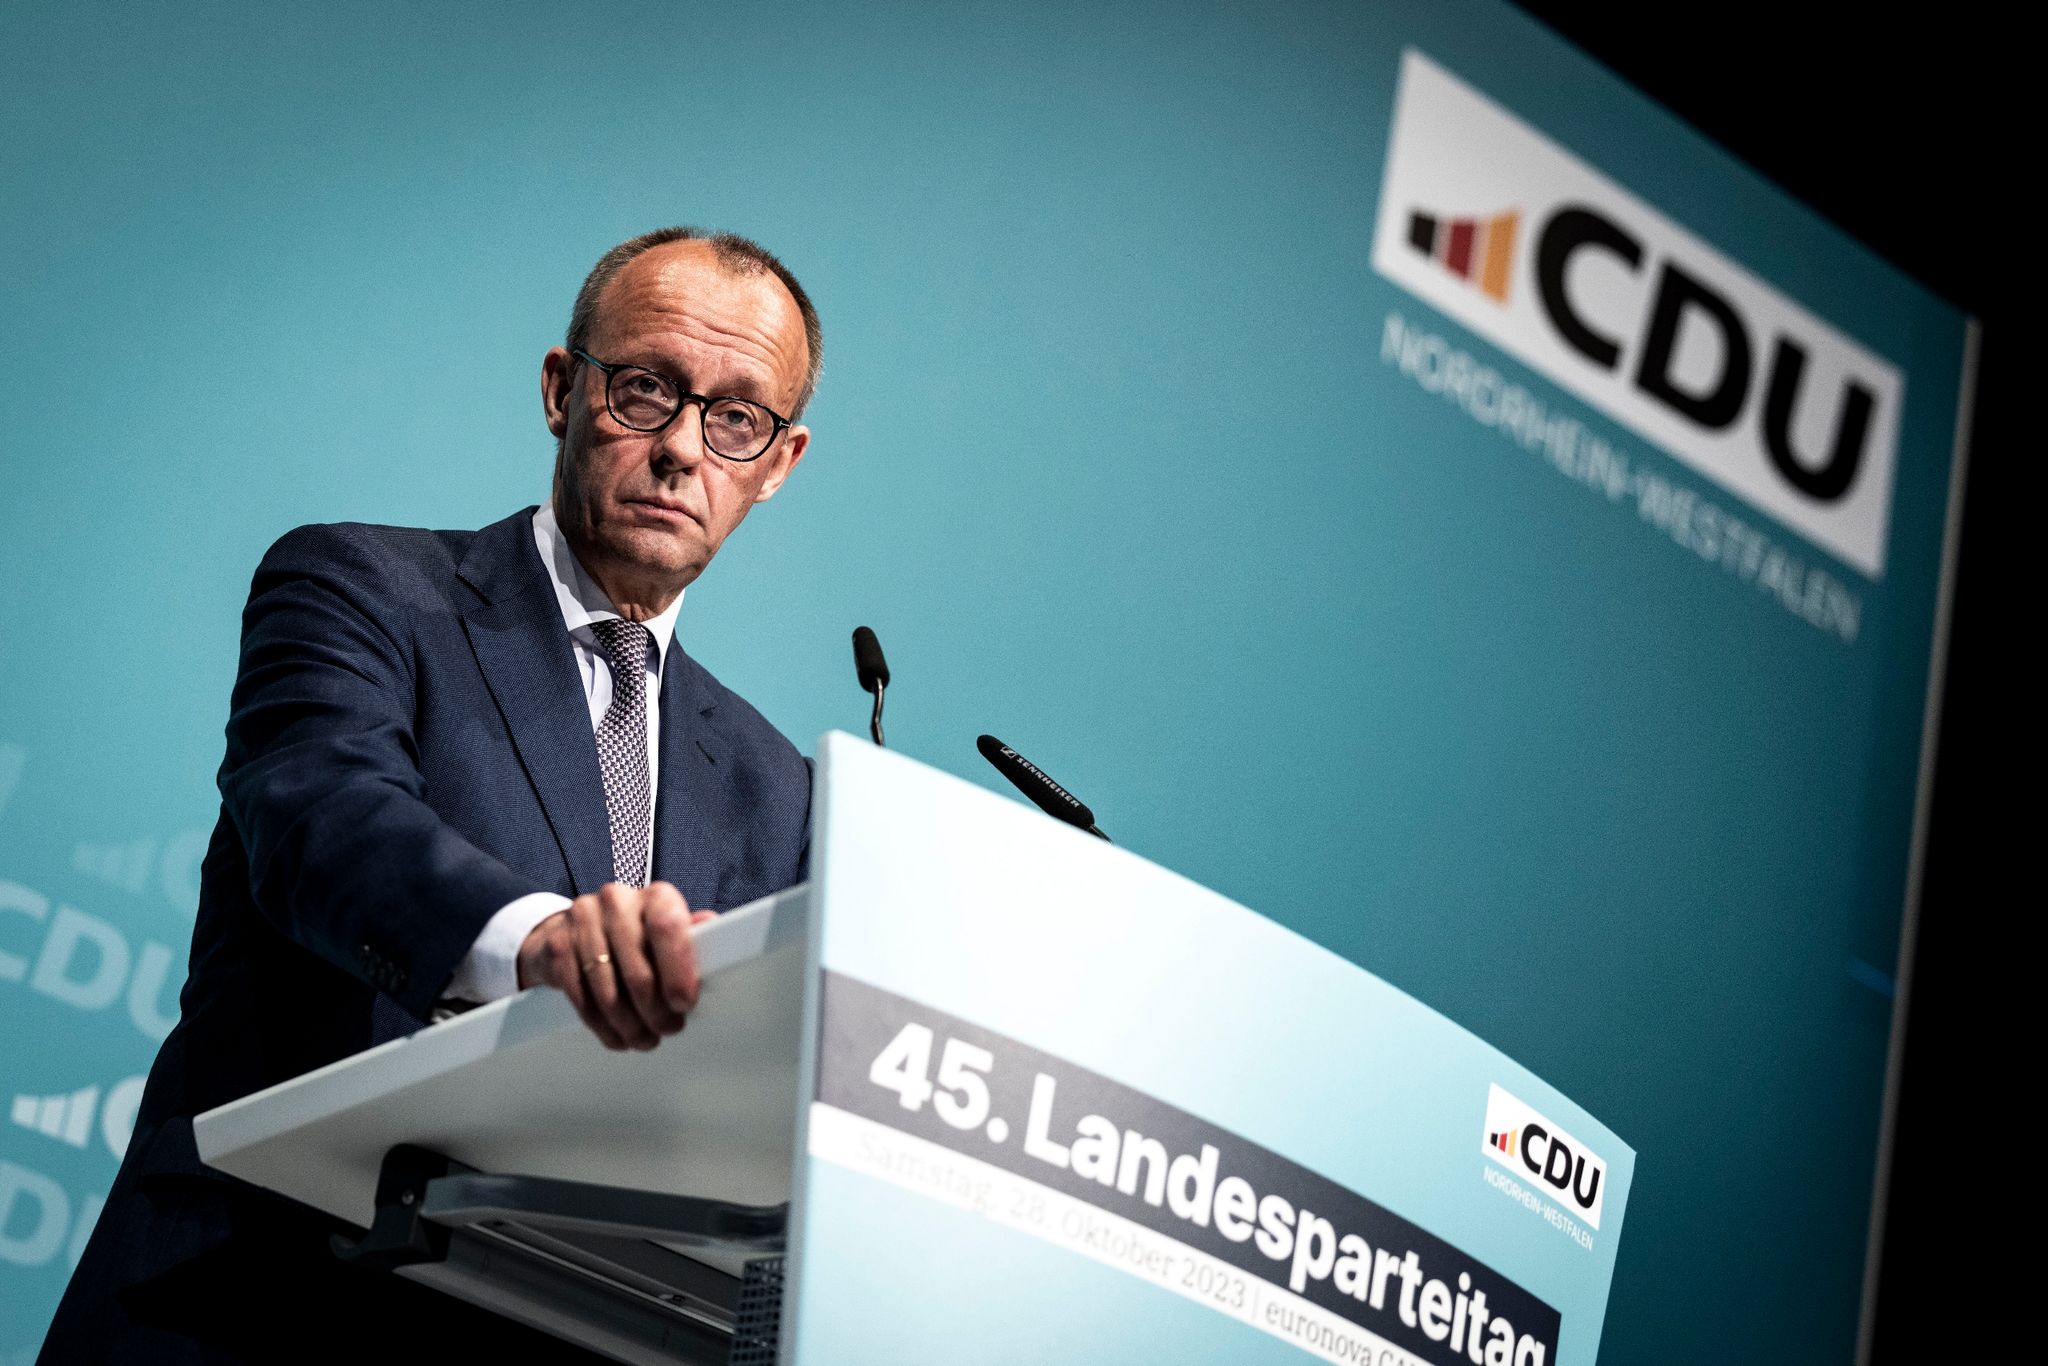 Einer aktuellen Umfrage zufolge liegt die CDU gemeinsam mit der CSU bei 31 Prozent der Stimmen.